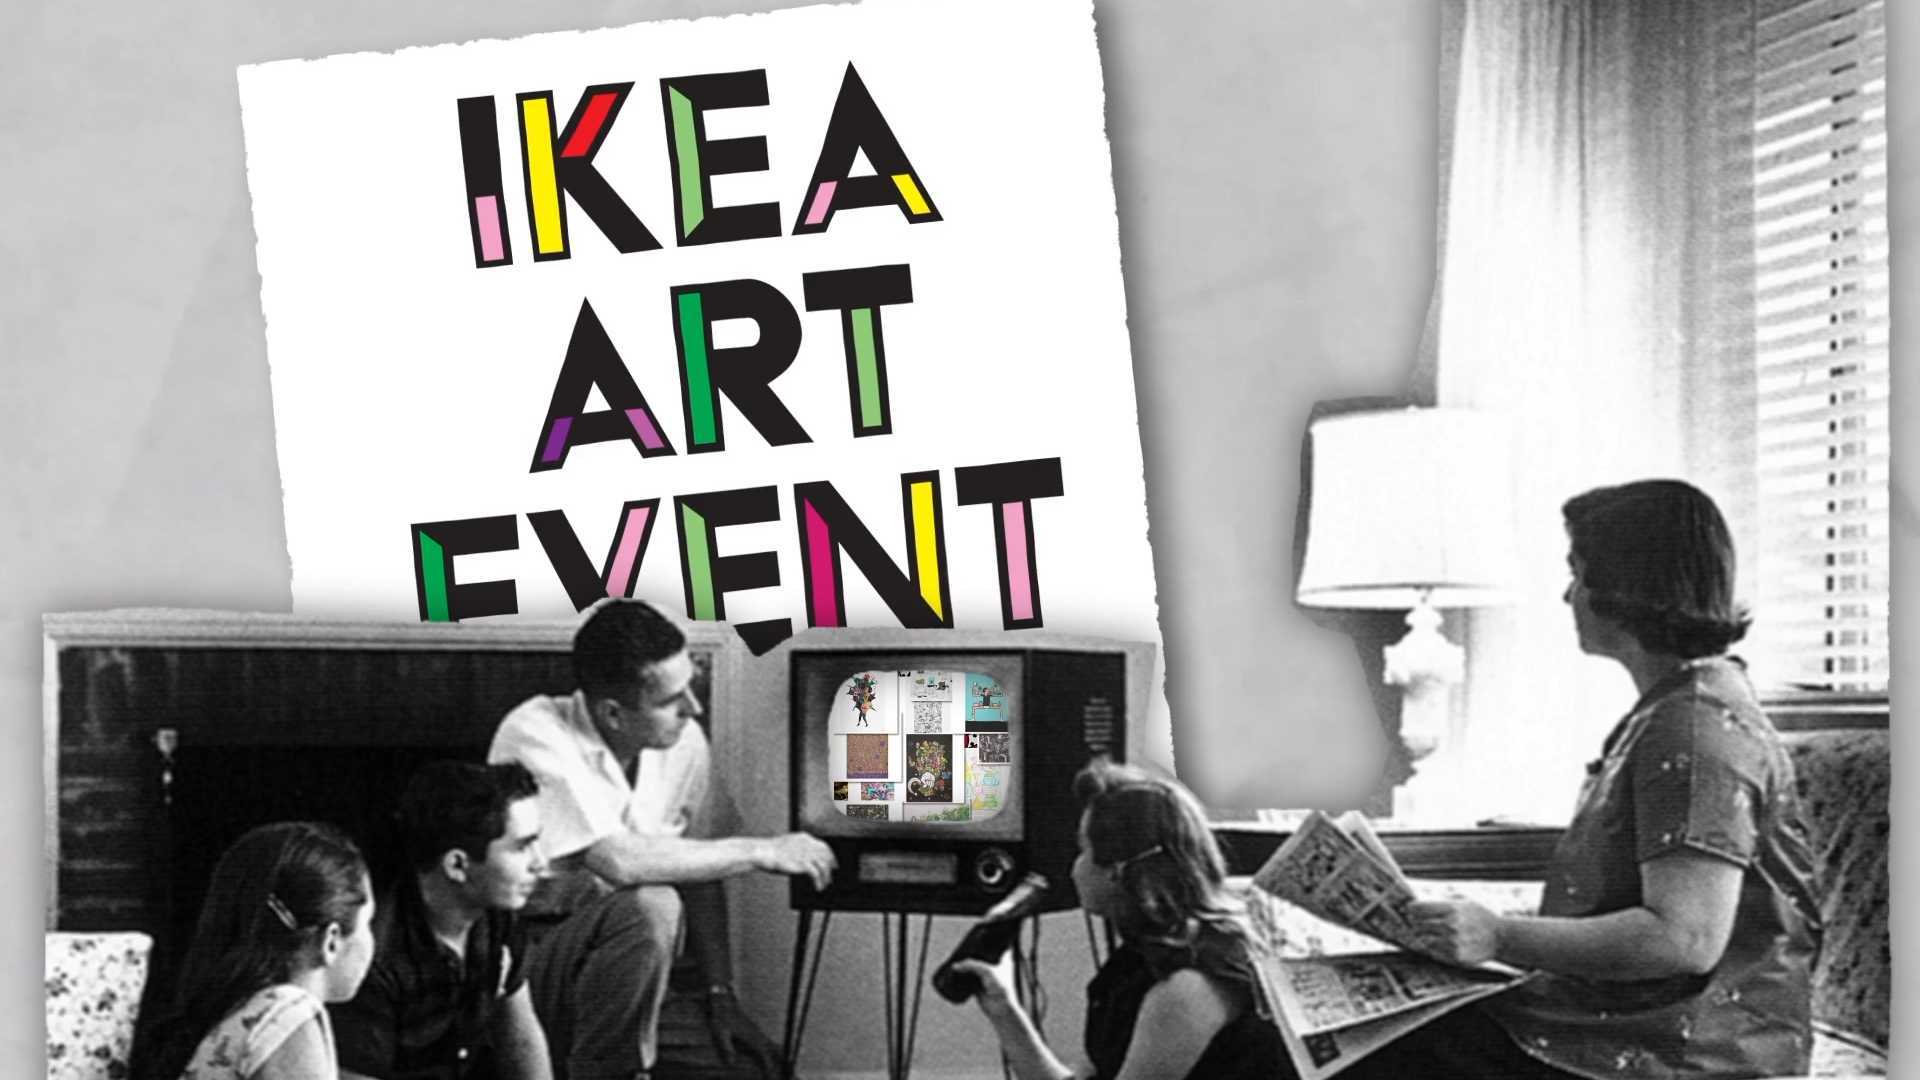 剪贴画丨宜家艺术节 IKEA ART EVENT丨拼贴艺术